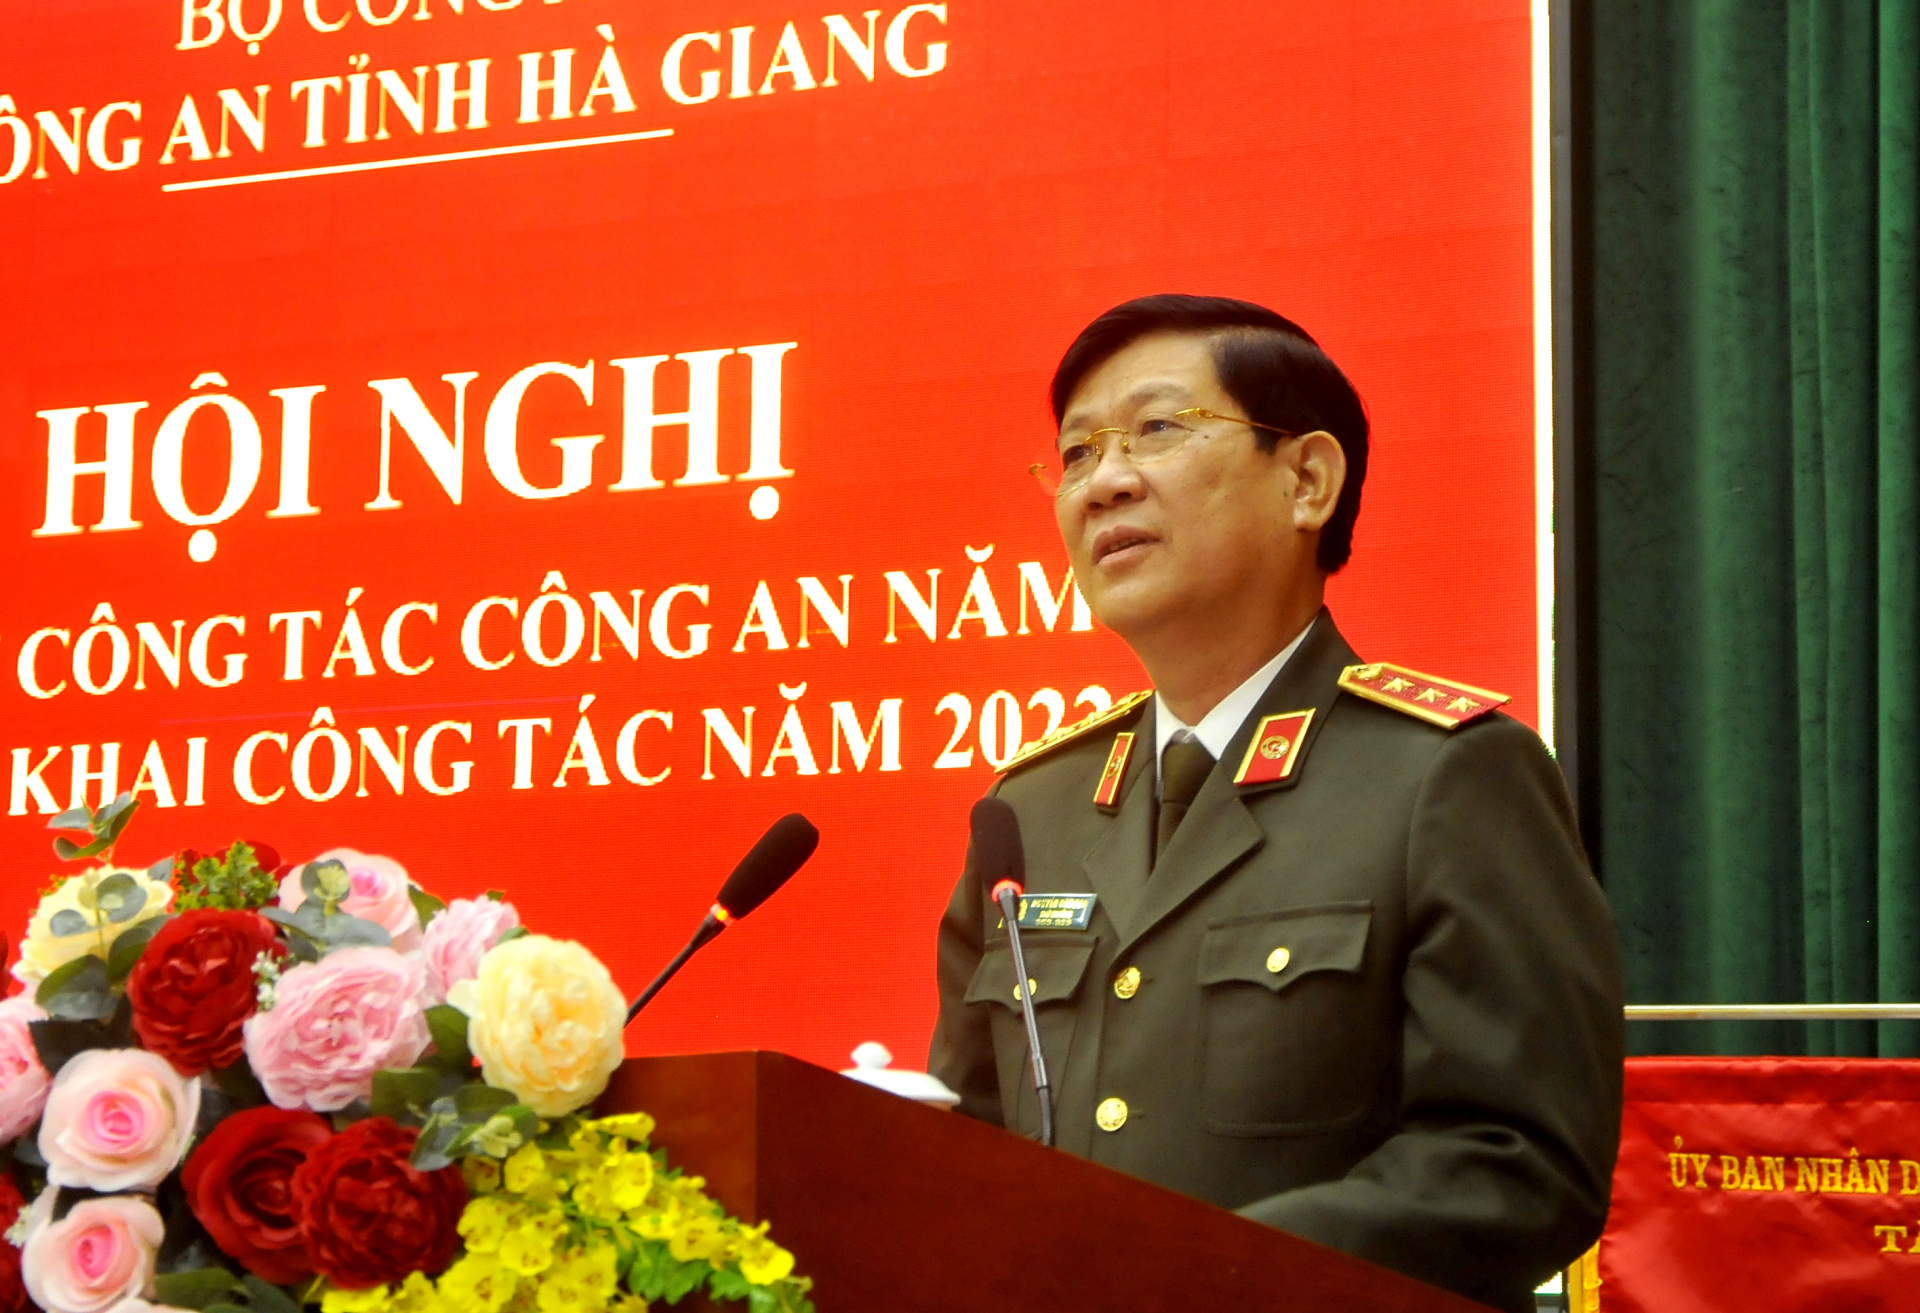 Thượng tướng Nguyễn Văn Sơn, Thứ trưởng Bộ Công an phát biểu tại hội nghị.